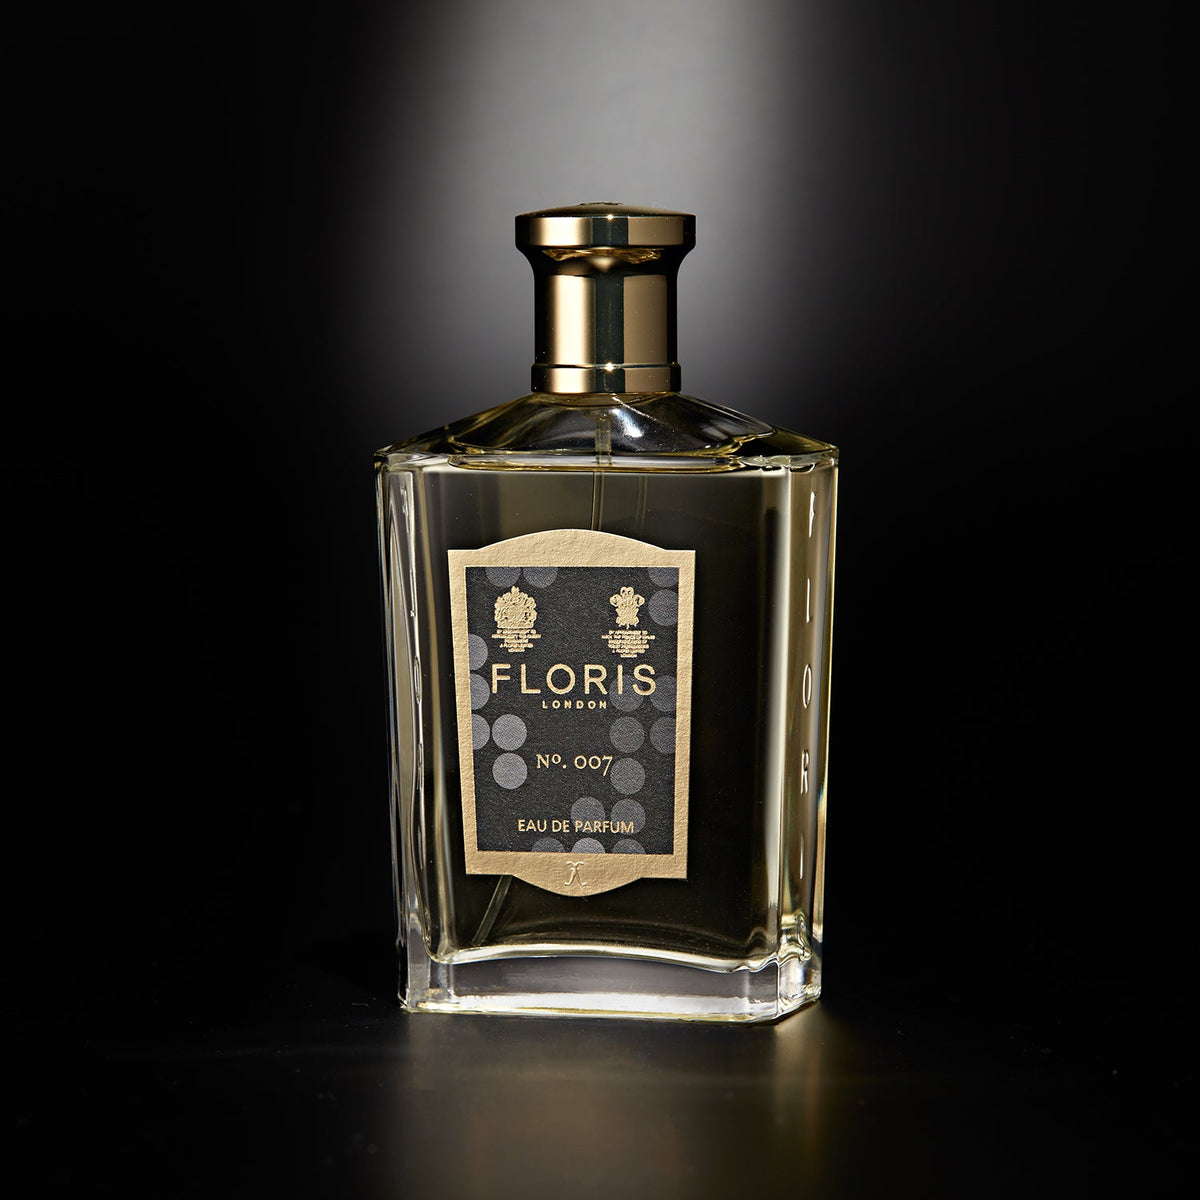 No.007 Eau De Parfum - By Floris London (100ml)